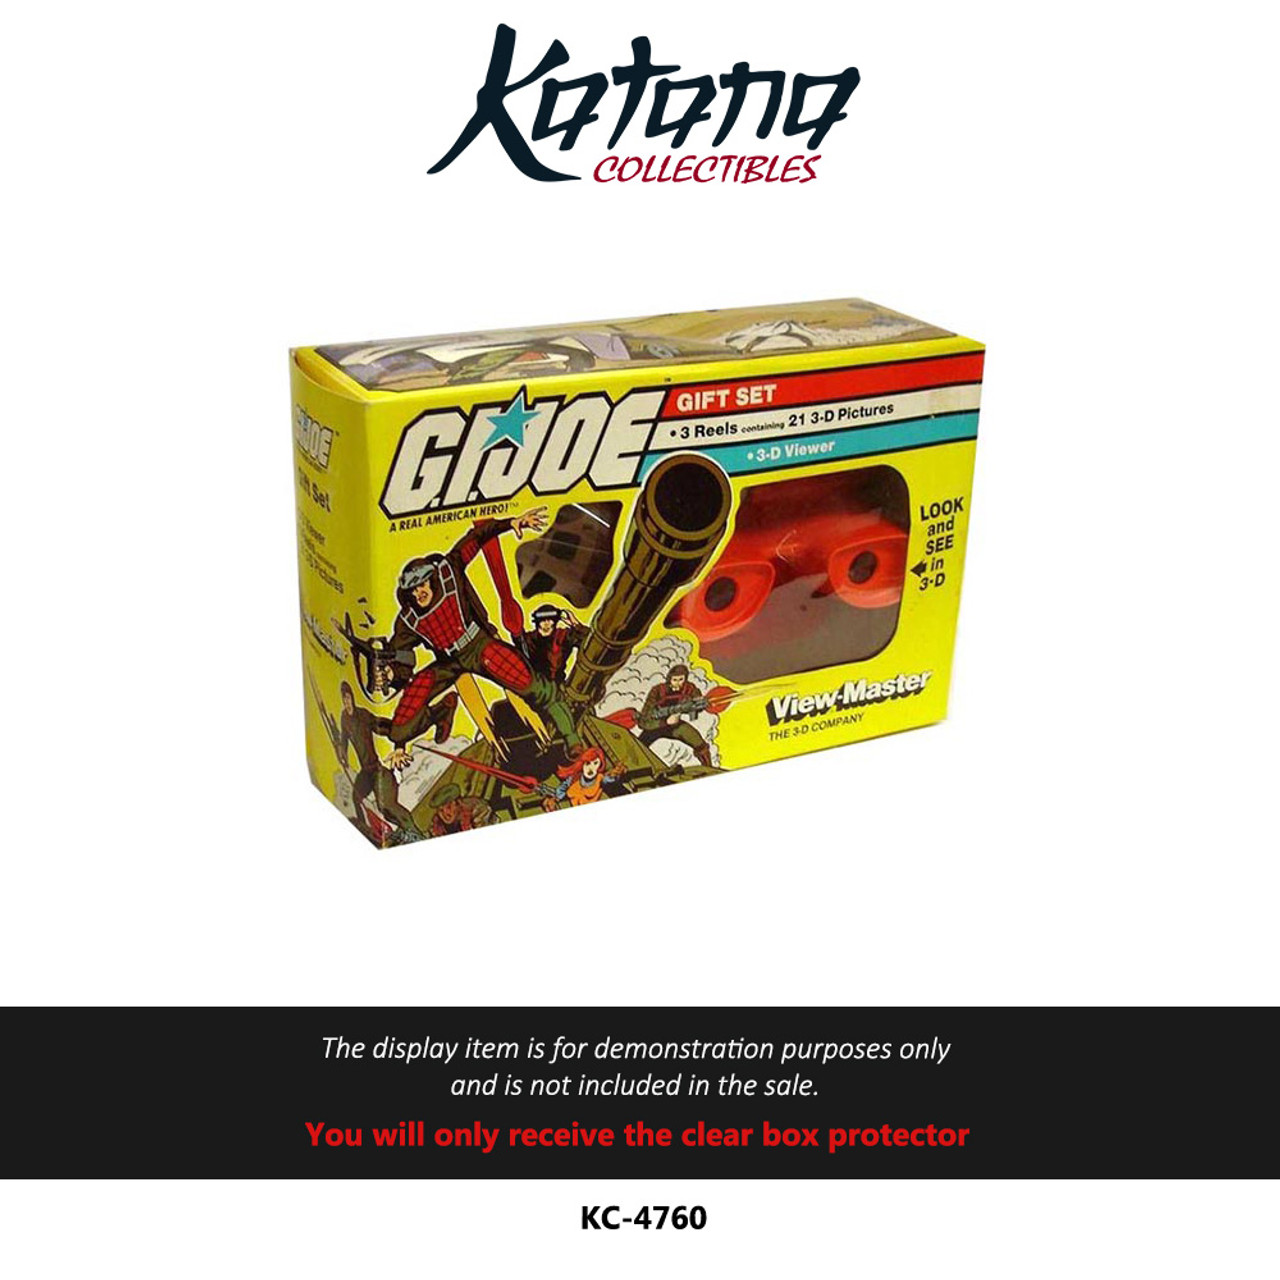 Katana Collectibles Protector For 1983 G.I. Joe View-Master Gift Set